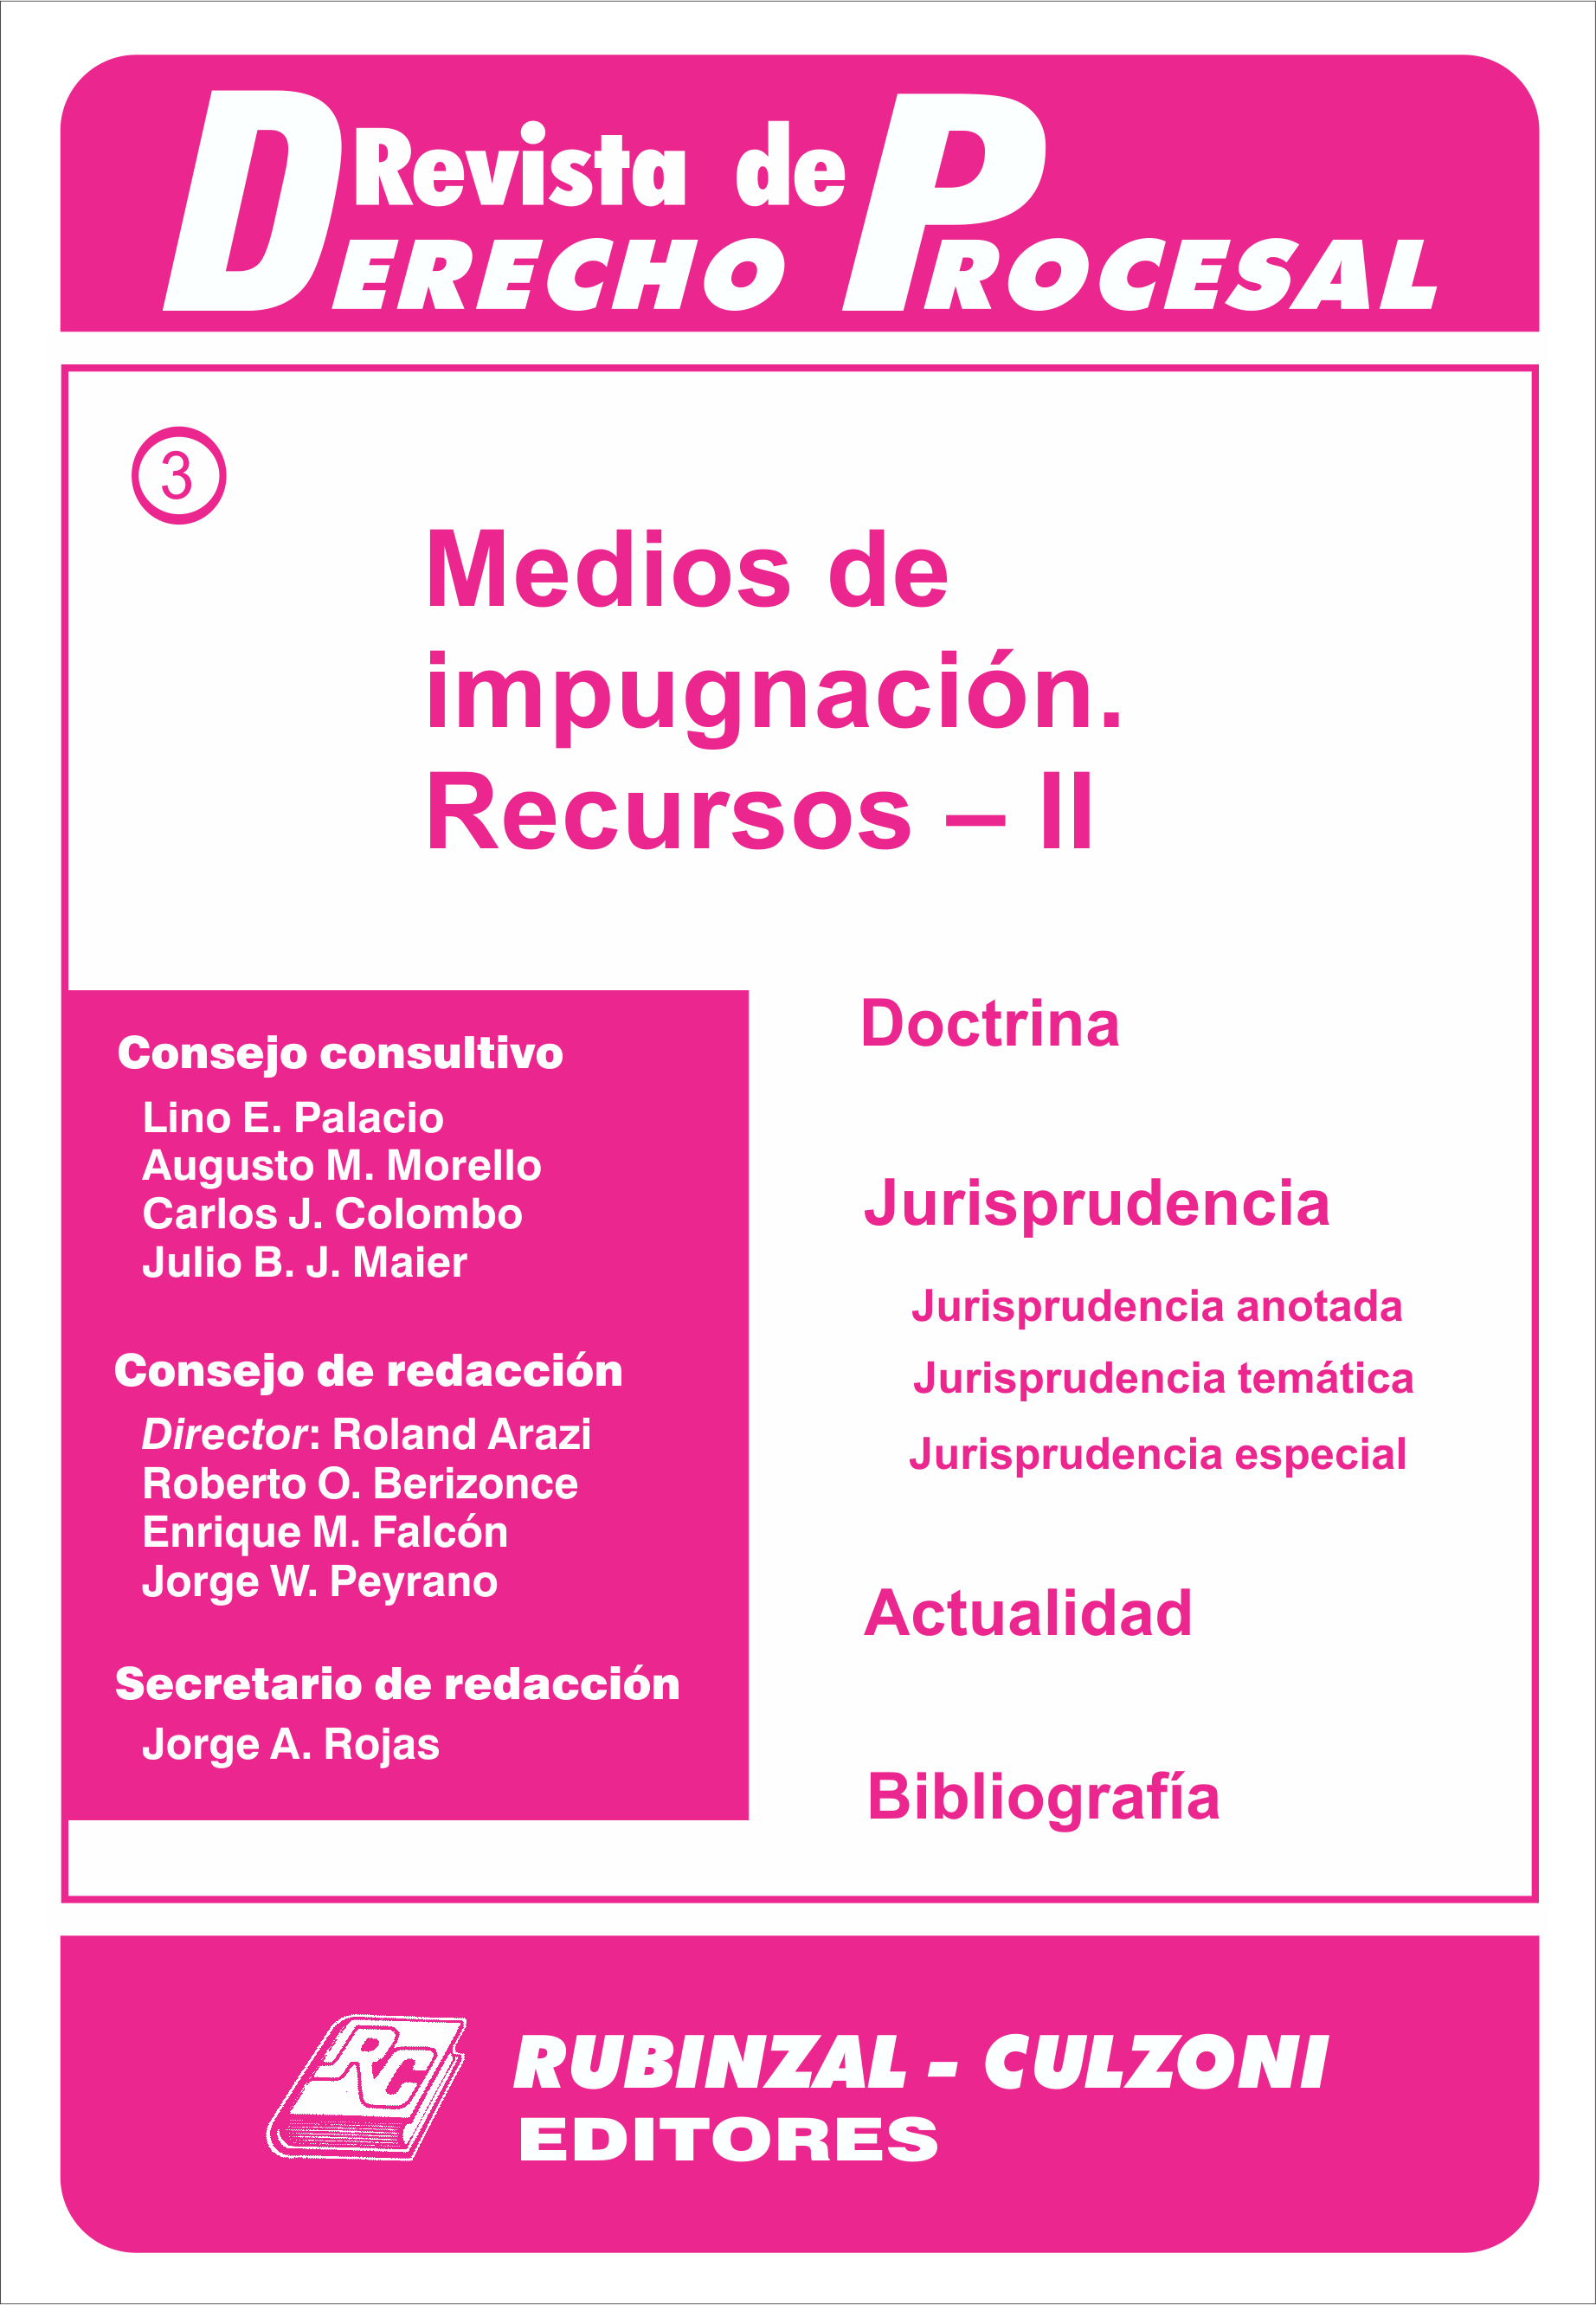 Revista de Derecho Procesal - Medios de impugnación